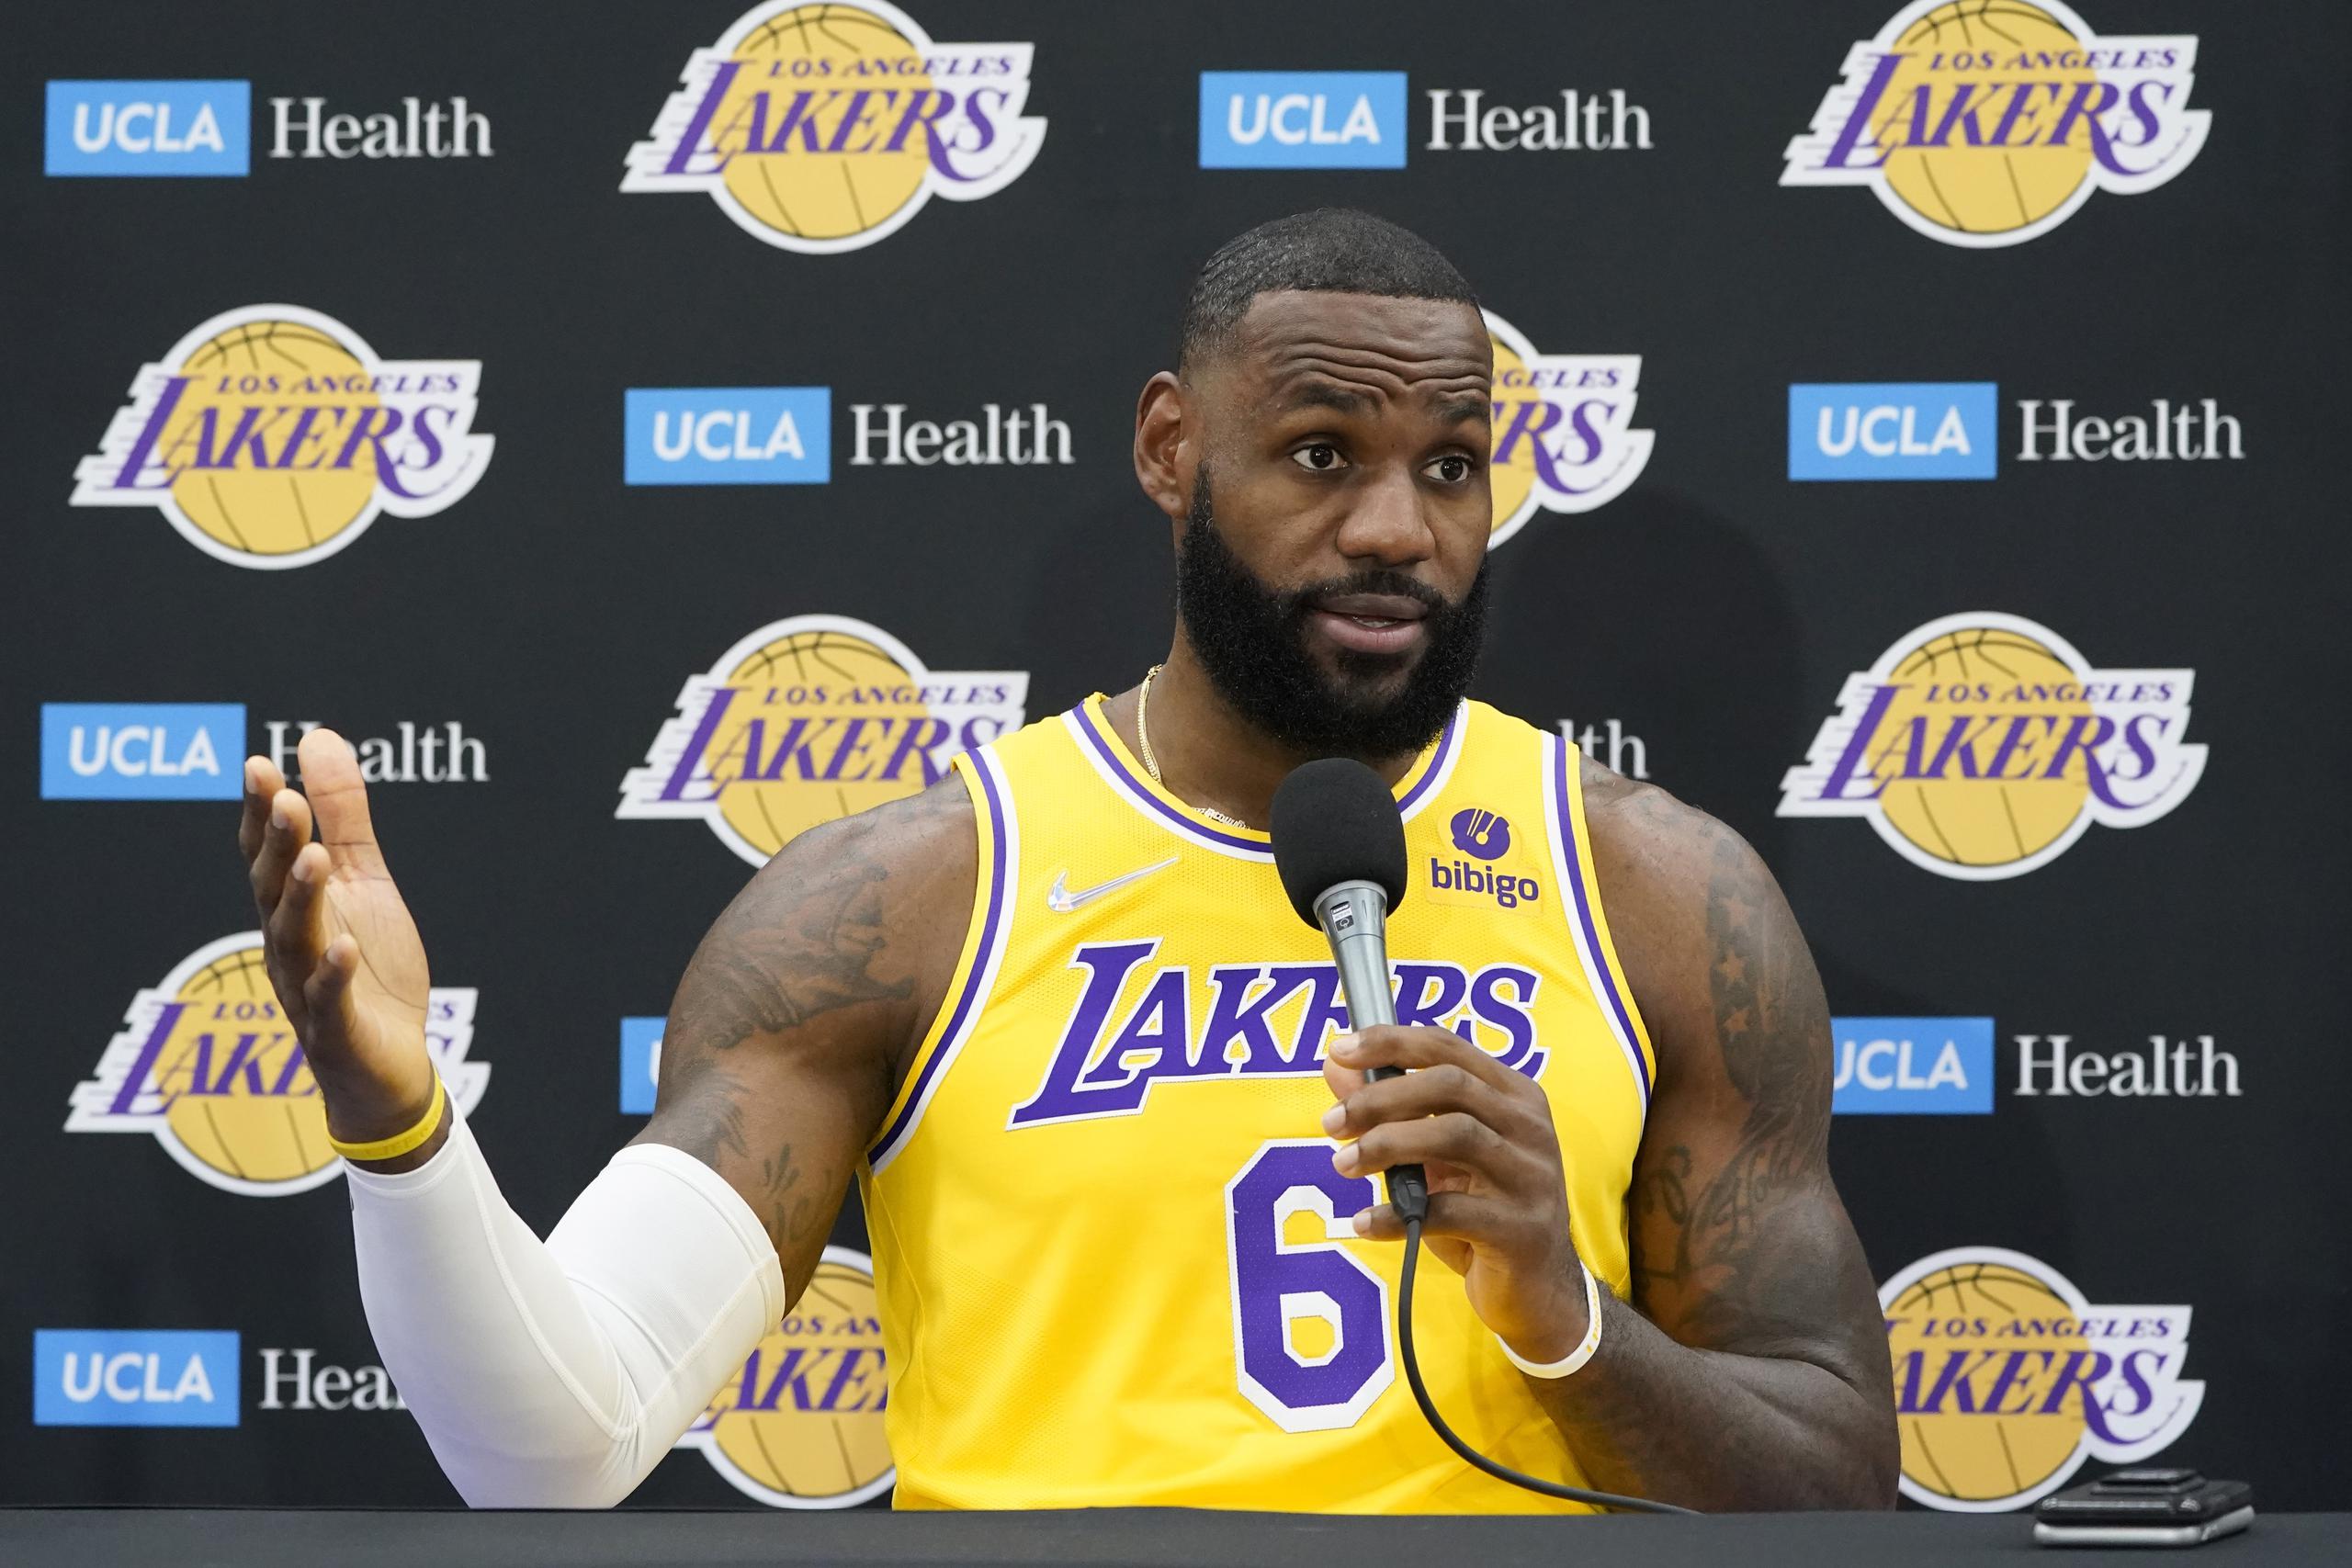 El alero de los Lakers de Los Ángeles, LeBron James, está a poco más de 1,000 puntos de alcanzar al inactivo Karl Malone en el segundo lugar de los más anotadores en la NBA.   (AP Photo/Marcio Jose Sanchez)